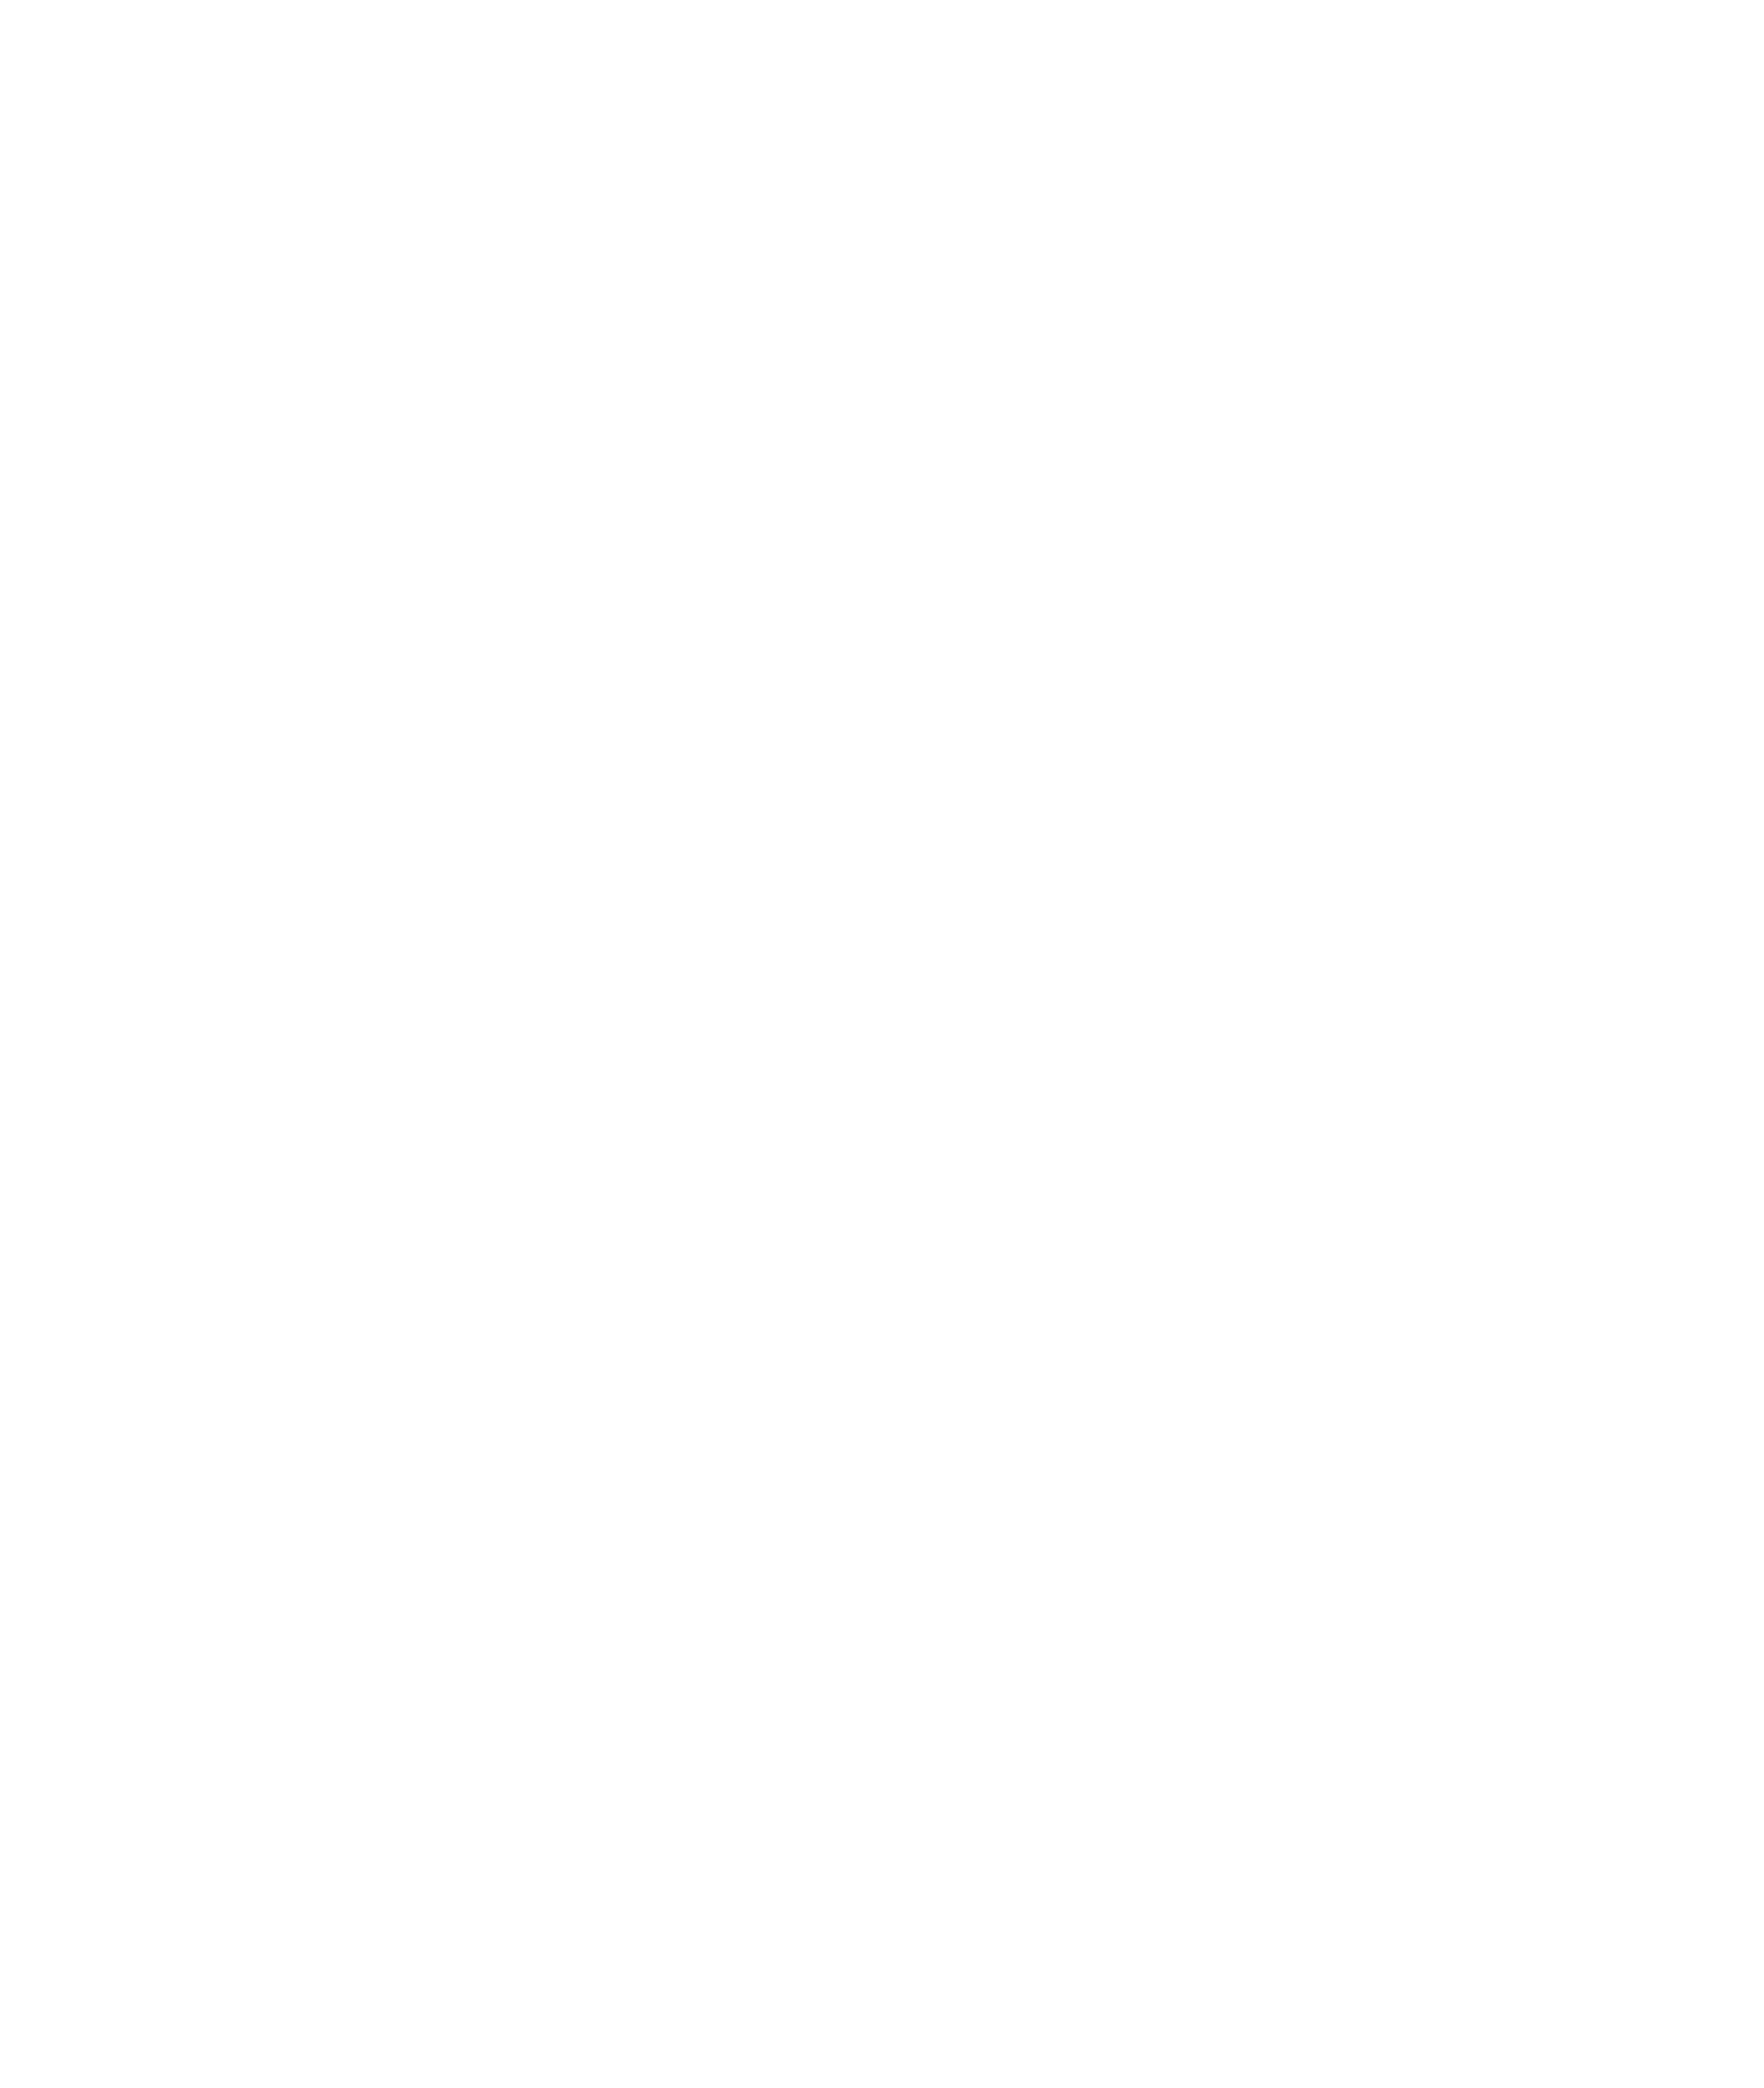 Magento Logo - New Relic Blog